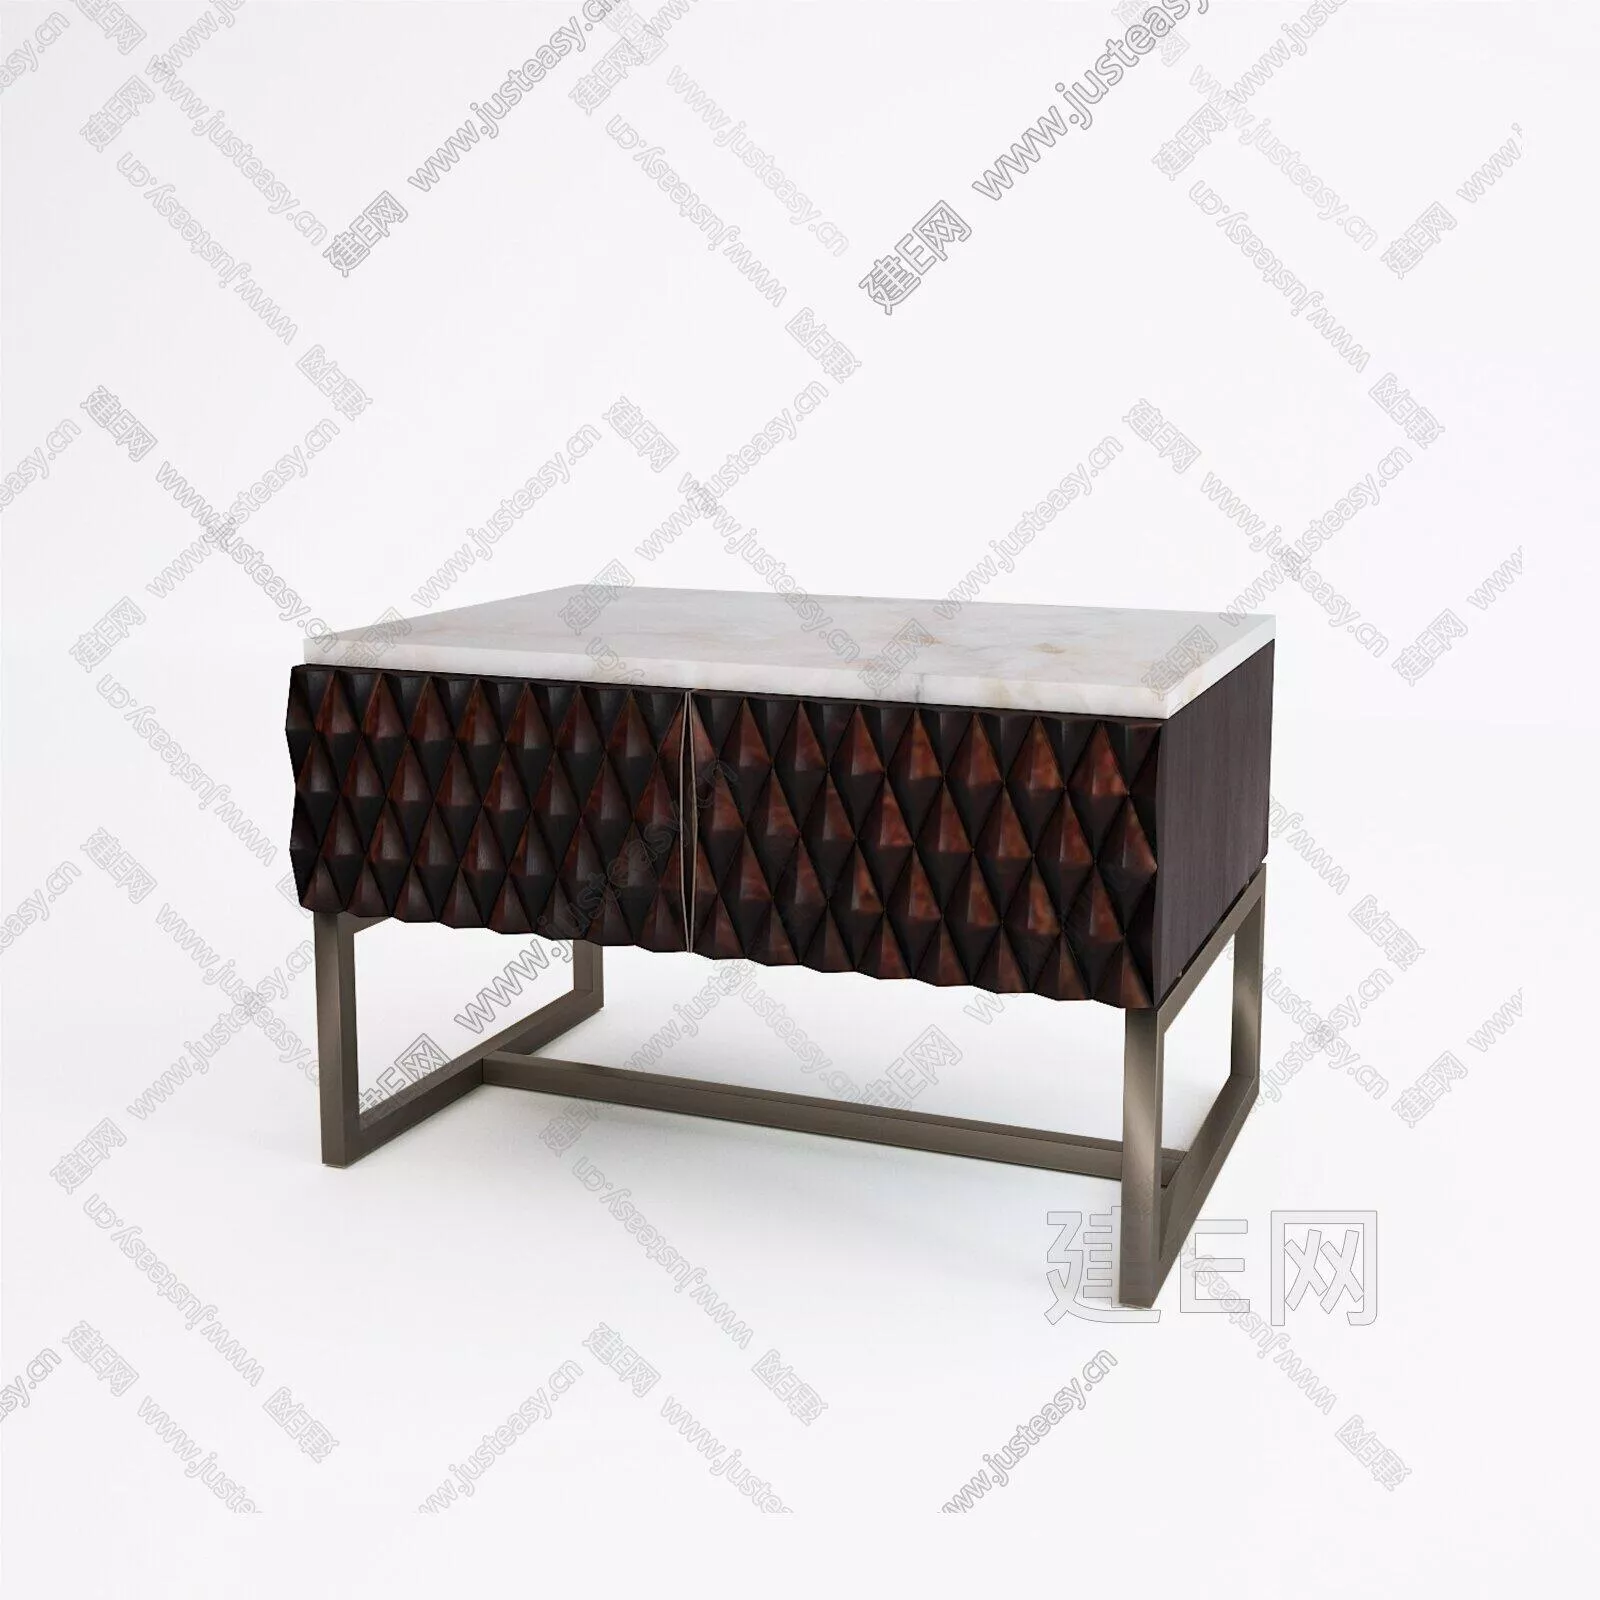 MODERN BEDSIDE TABLE - SKETCHUP 3D MODEL - ENSCAPE - 112020898